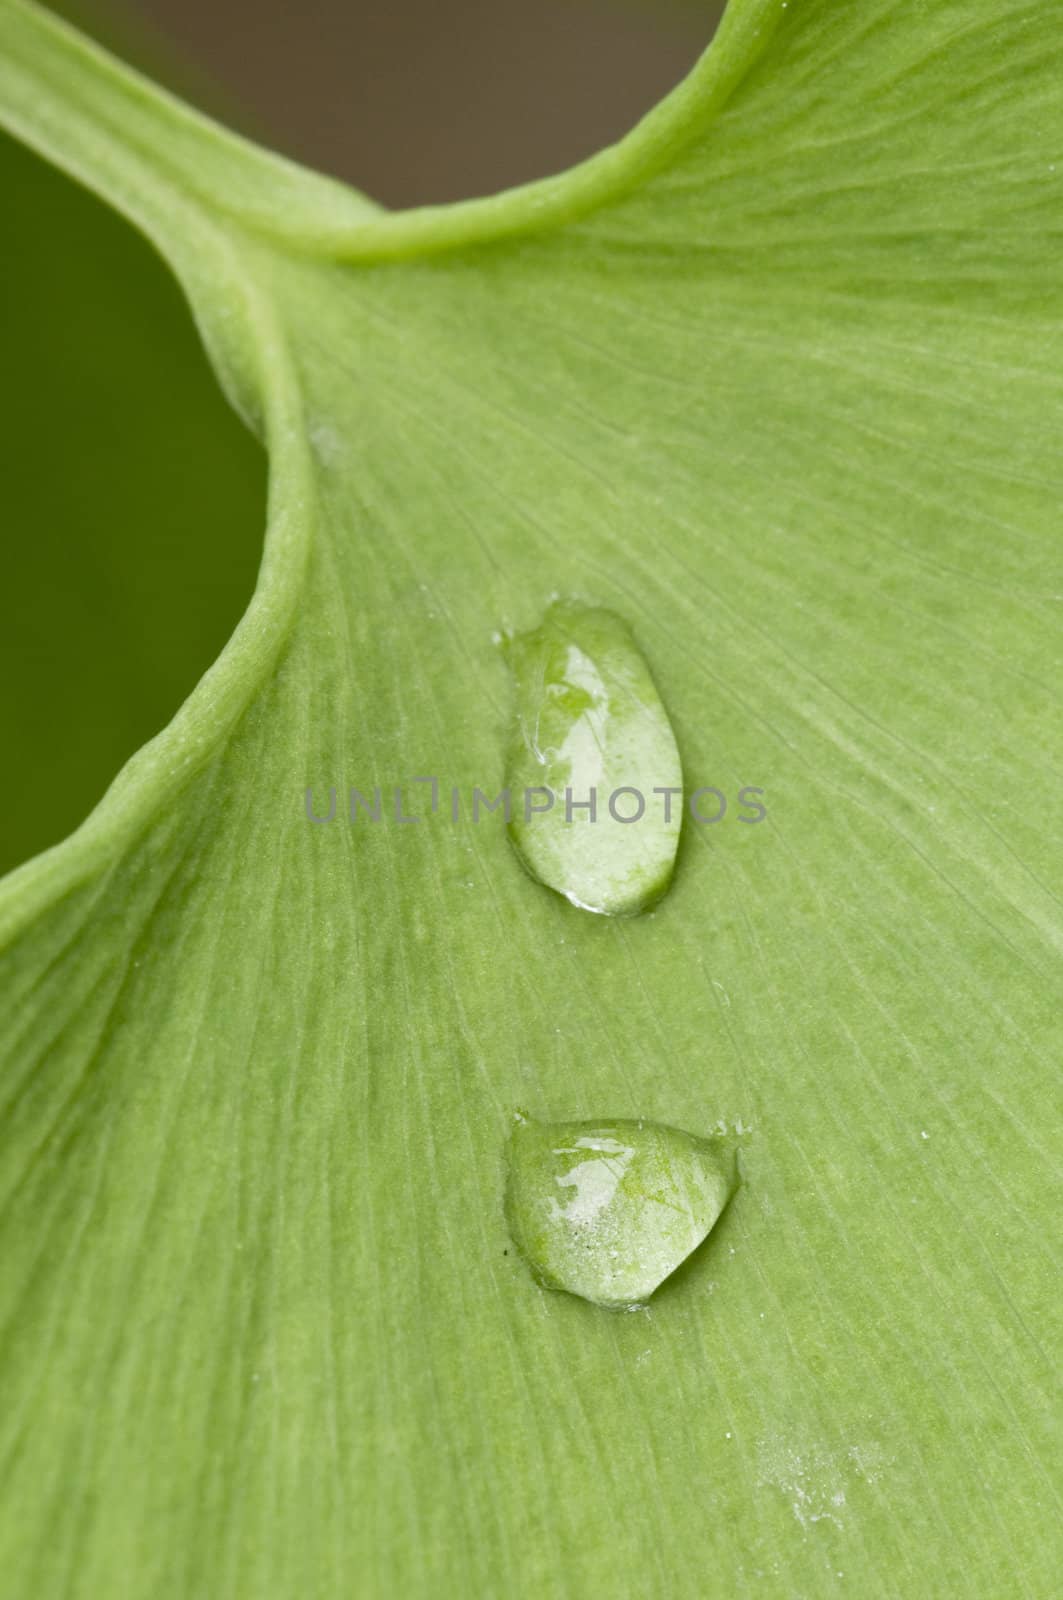 Dew drops on a green Gingko leaf